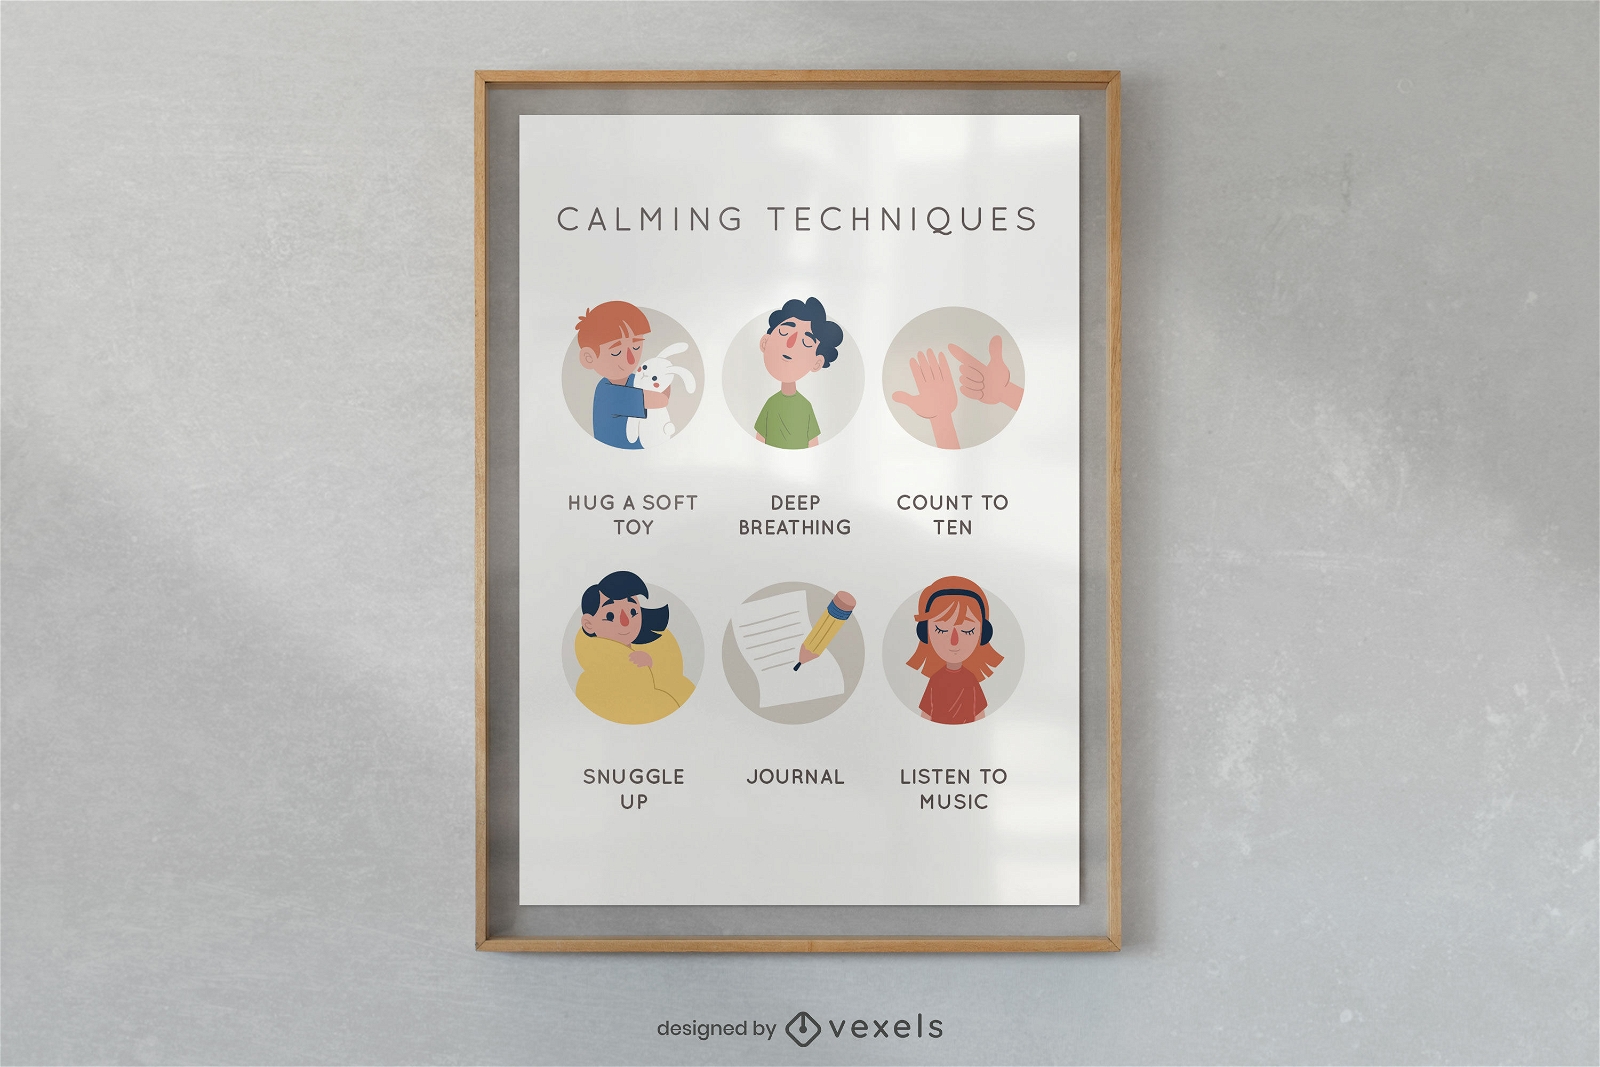 Diseño de carteles ilustrados de técnicas calmantes.